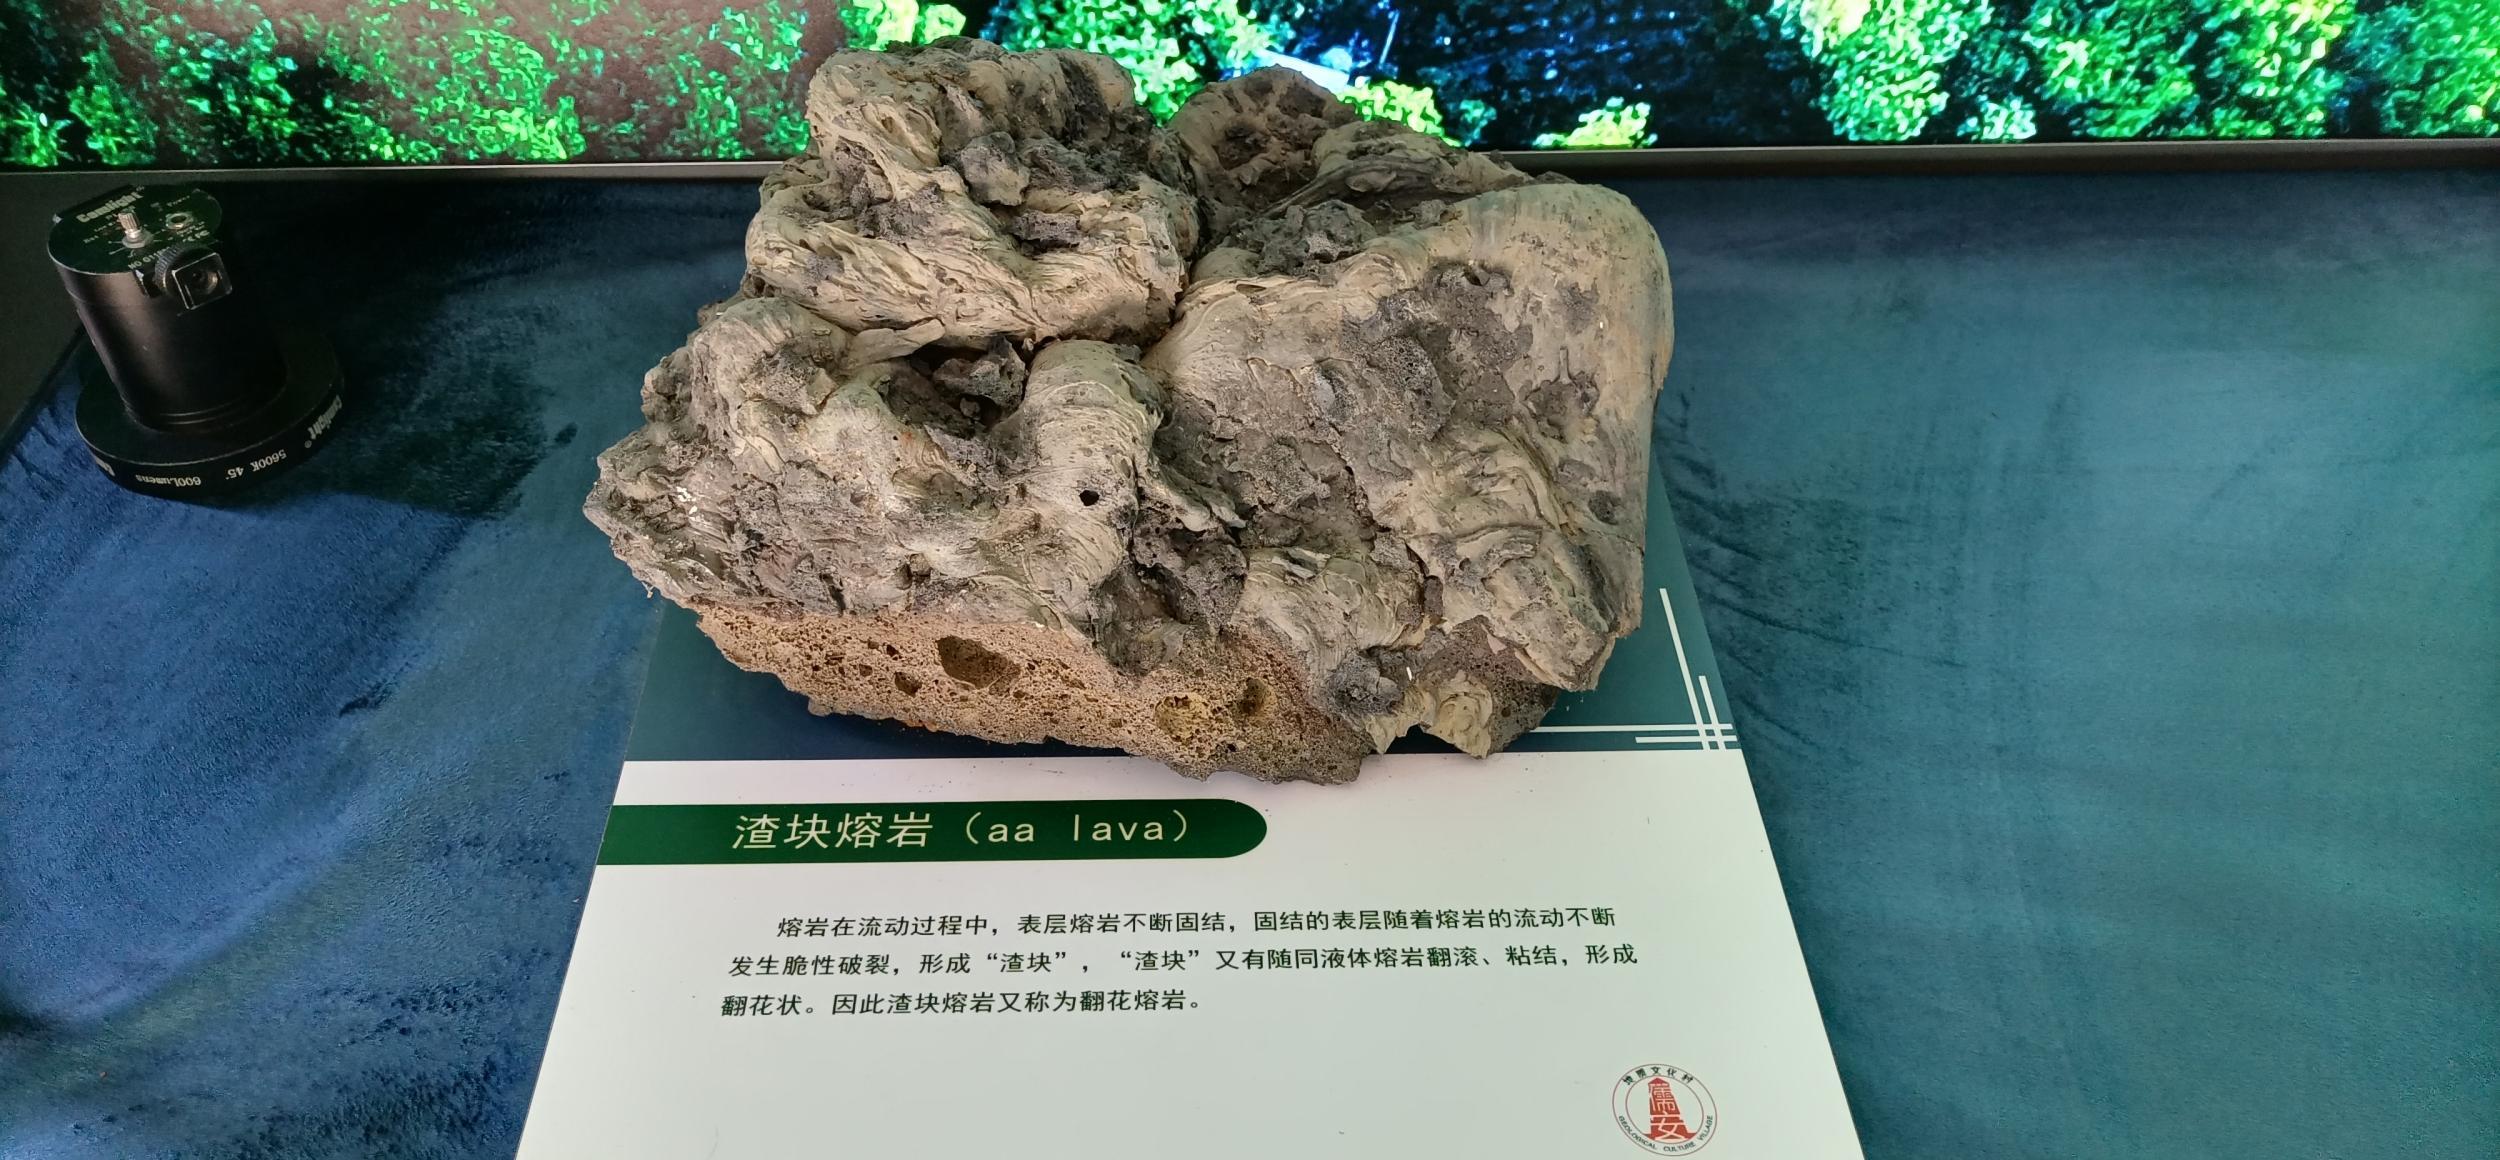 海口儒安火山地质文化村揭牌 系全国首批、海南第一个地质文化村